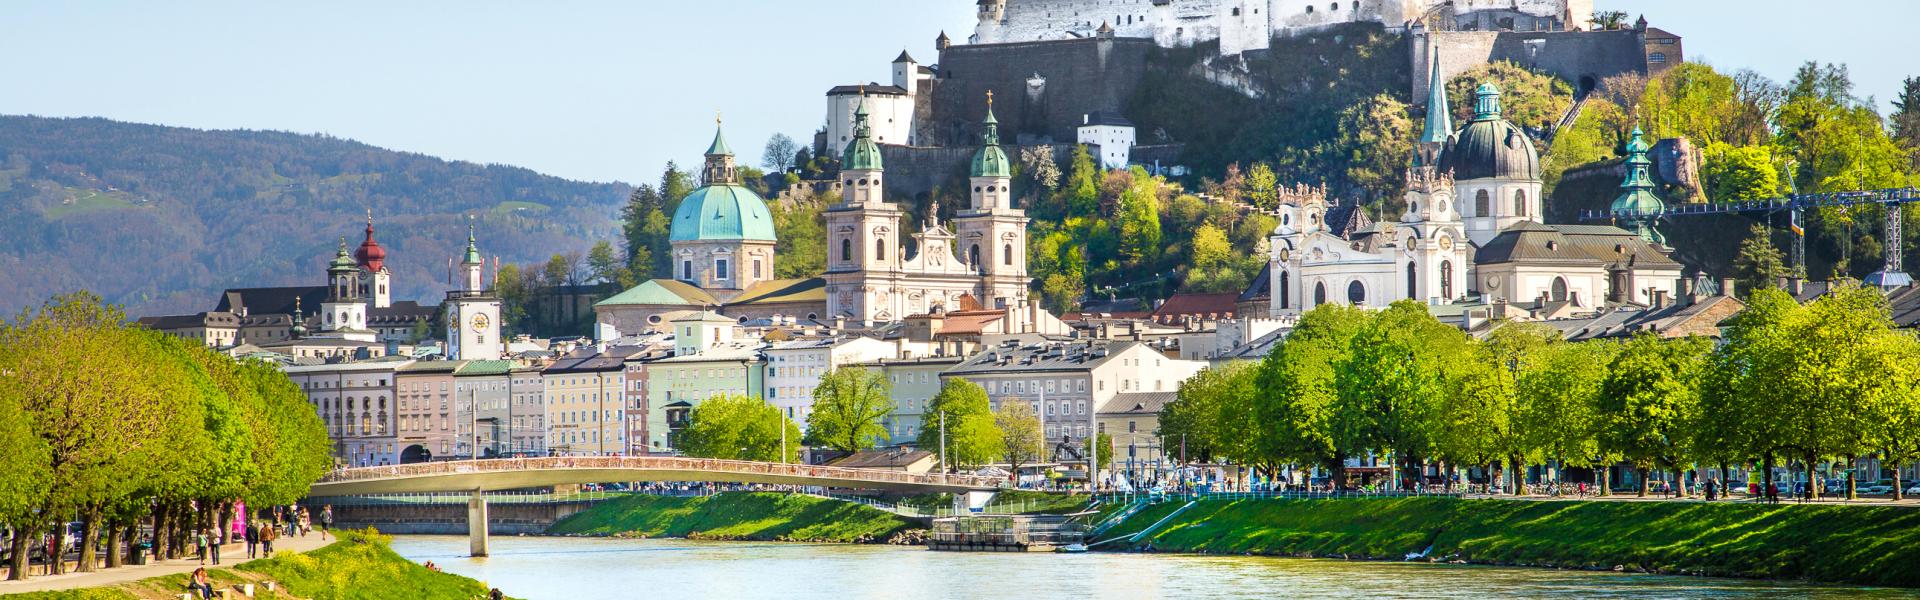 Ferienwohnungen & Ferienhäuser für Urlaub in der Stadt Salzburg - Casamundo